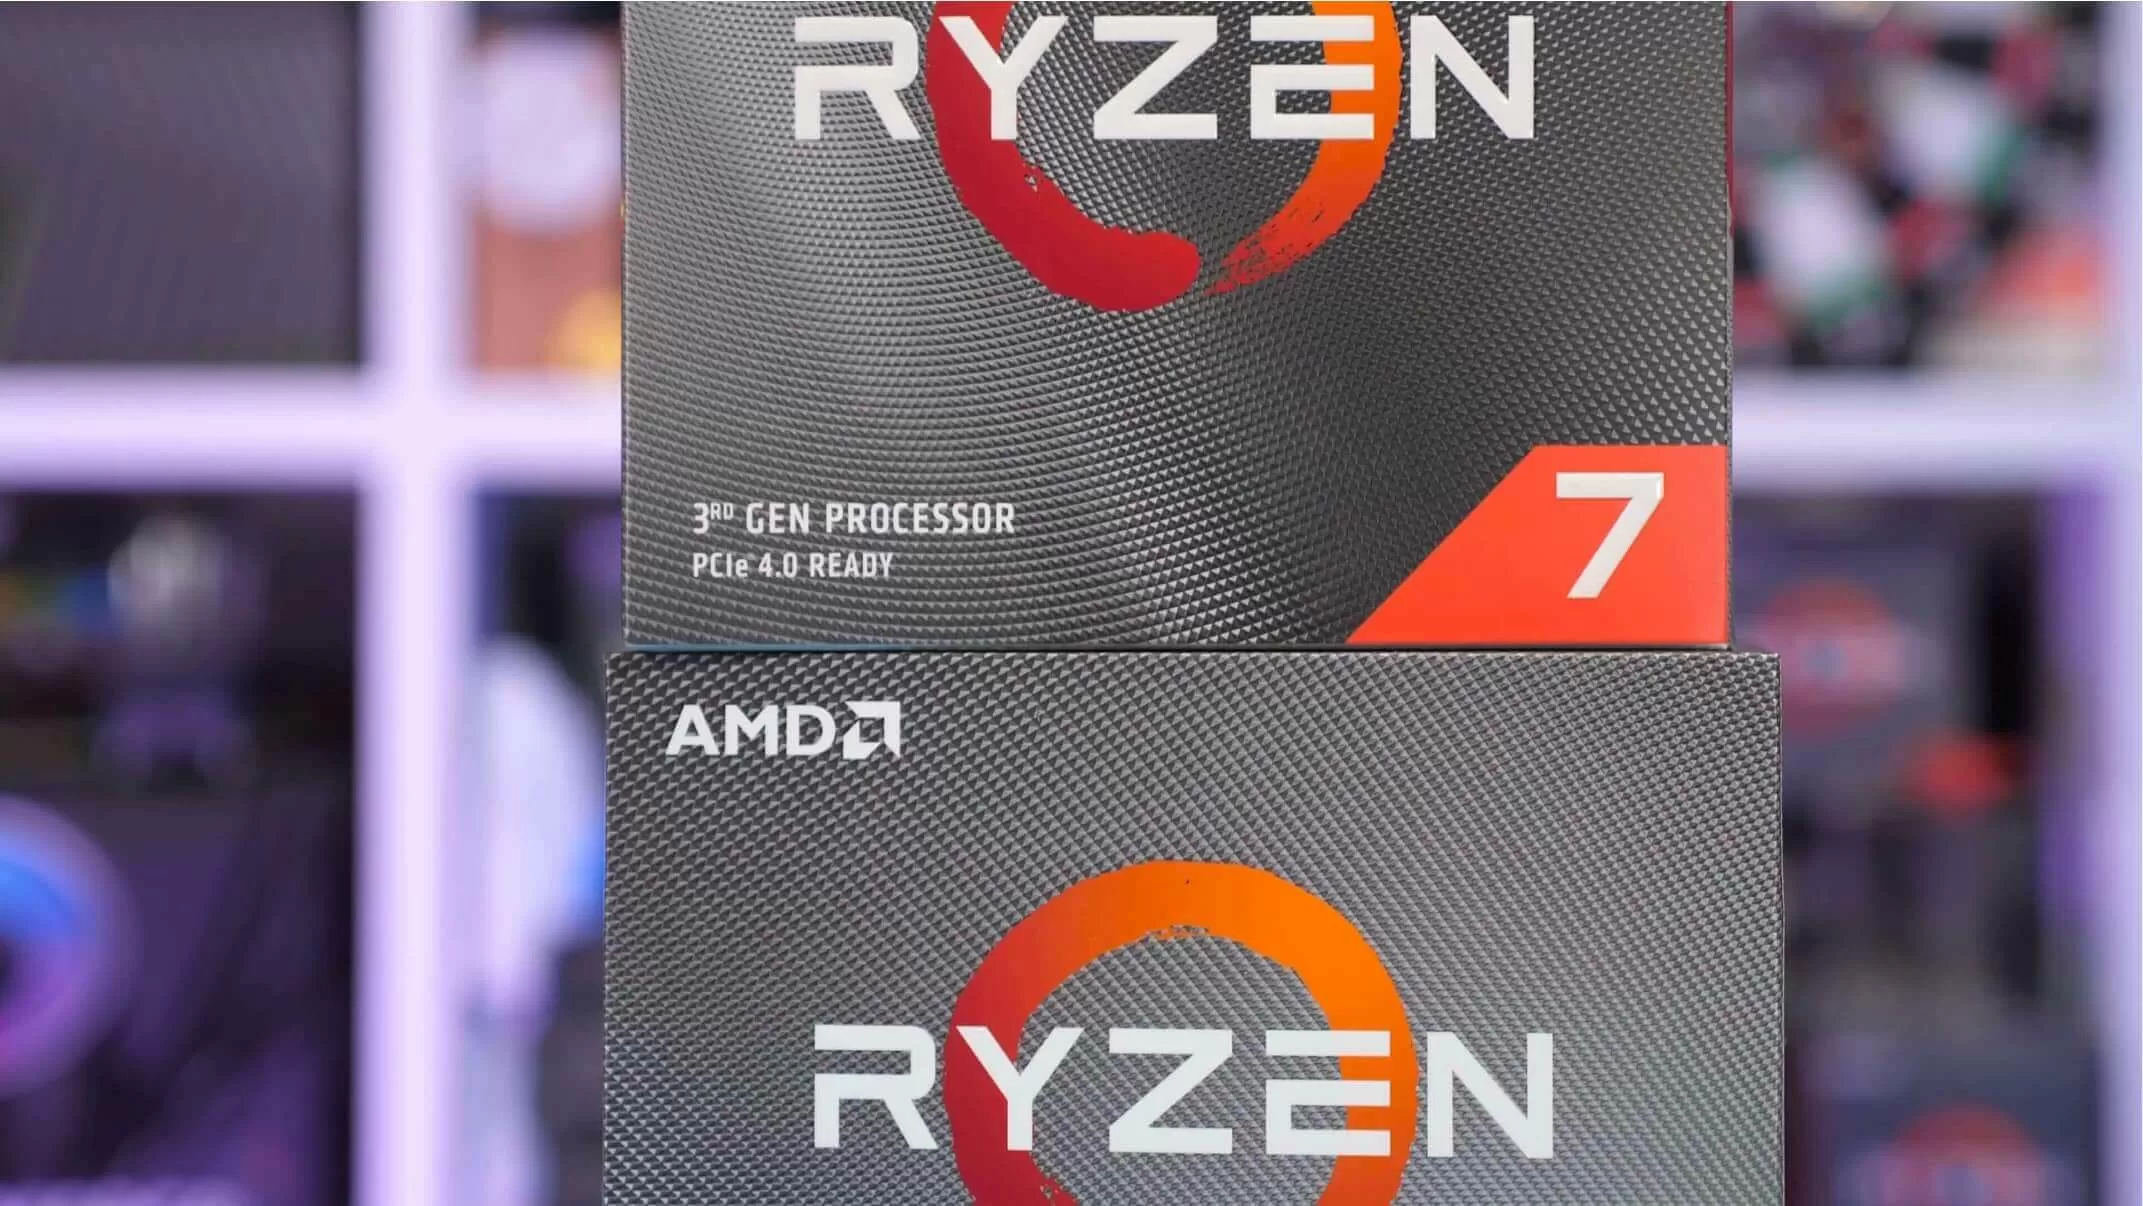 AMD: Zen 3-based chips will definitely launch in 2020